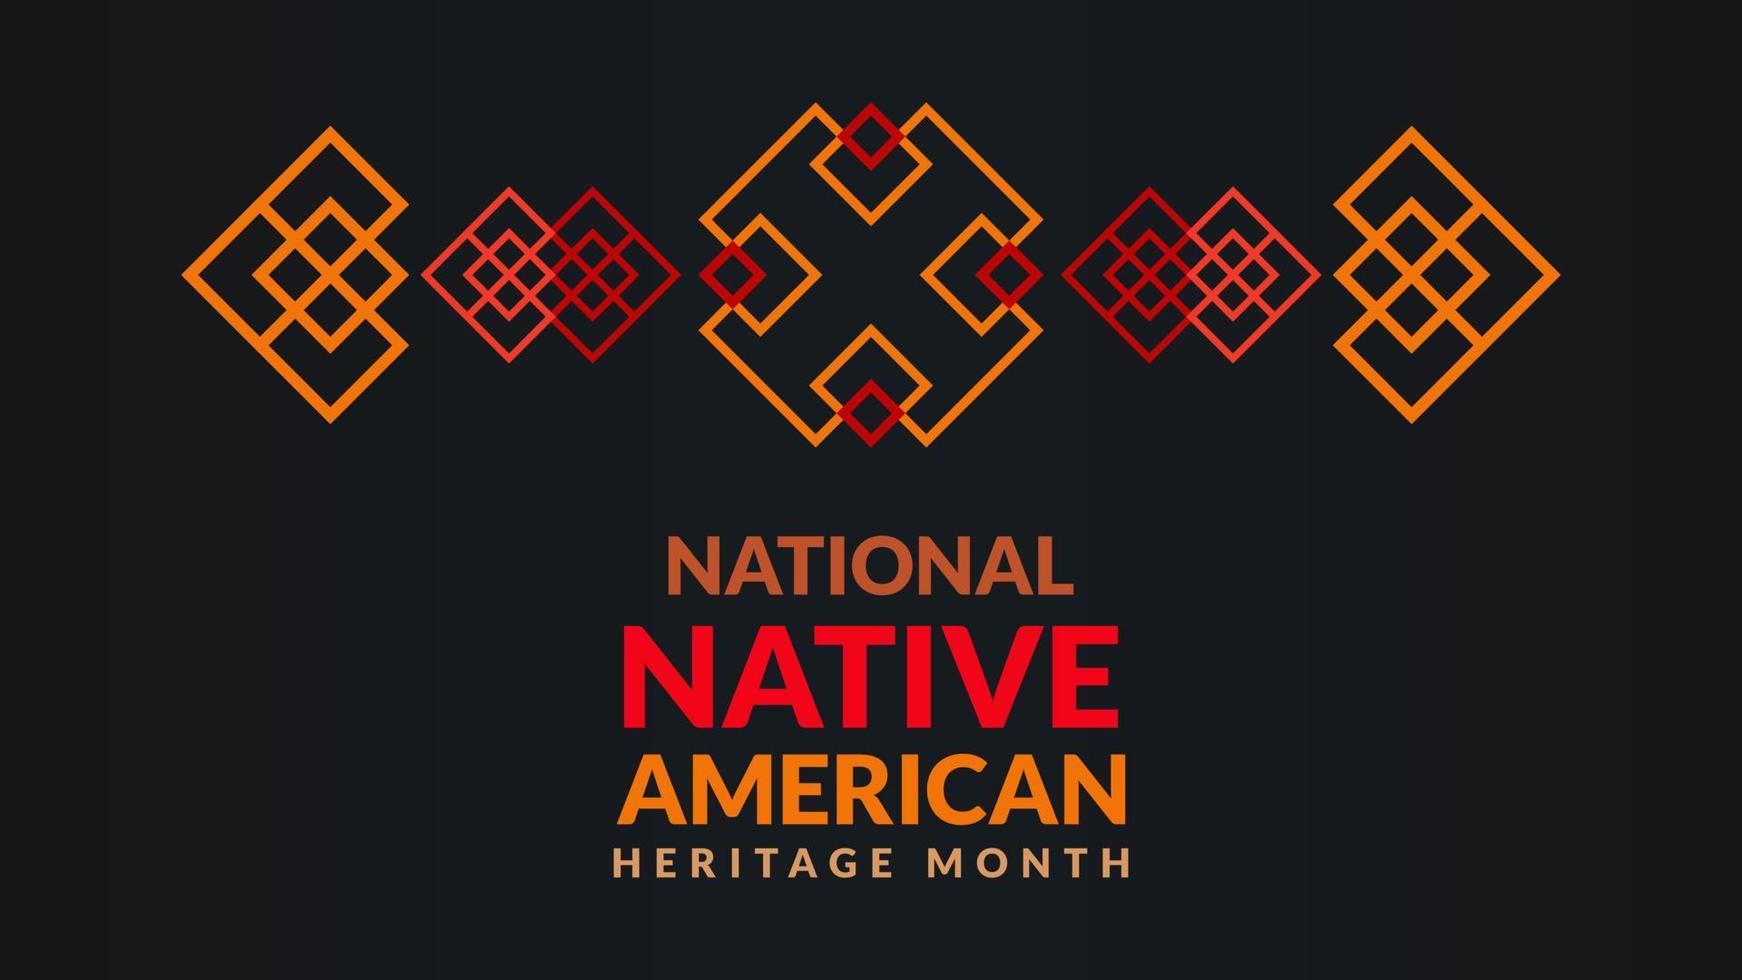 mês do patrimônio nativo americano. design de plano de fundo com ornamentos abstratos celebrando índios nativos da américa. vetor